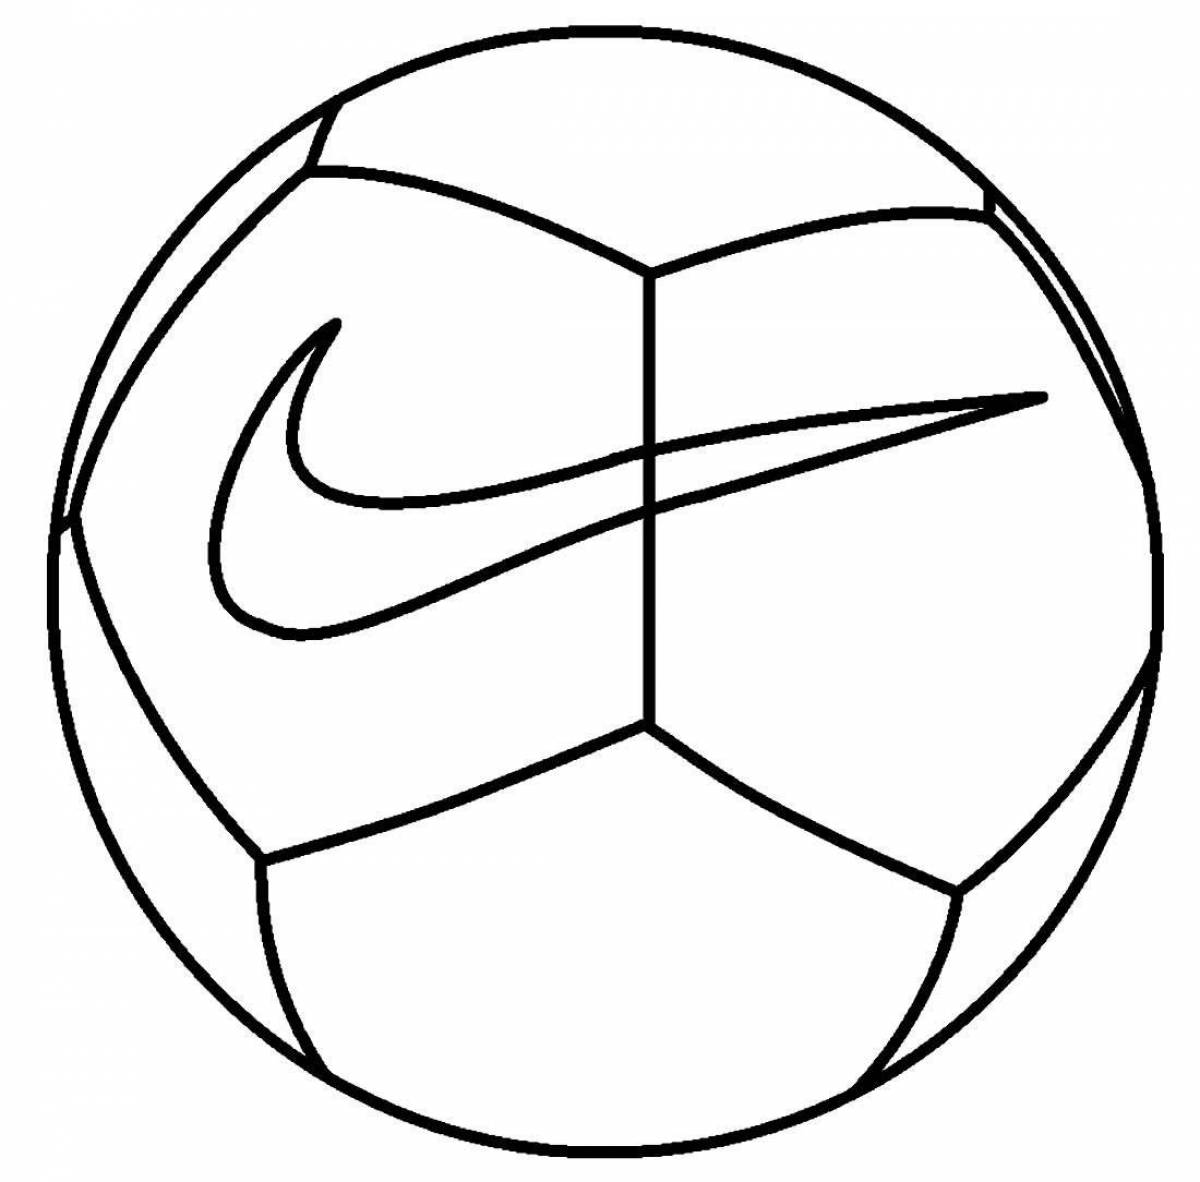 Раскраска футбольный мяч найк